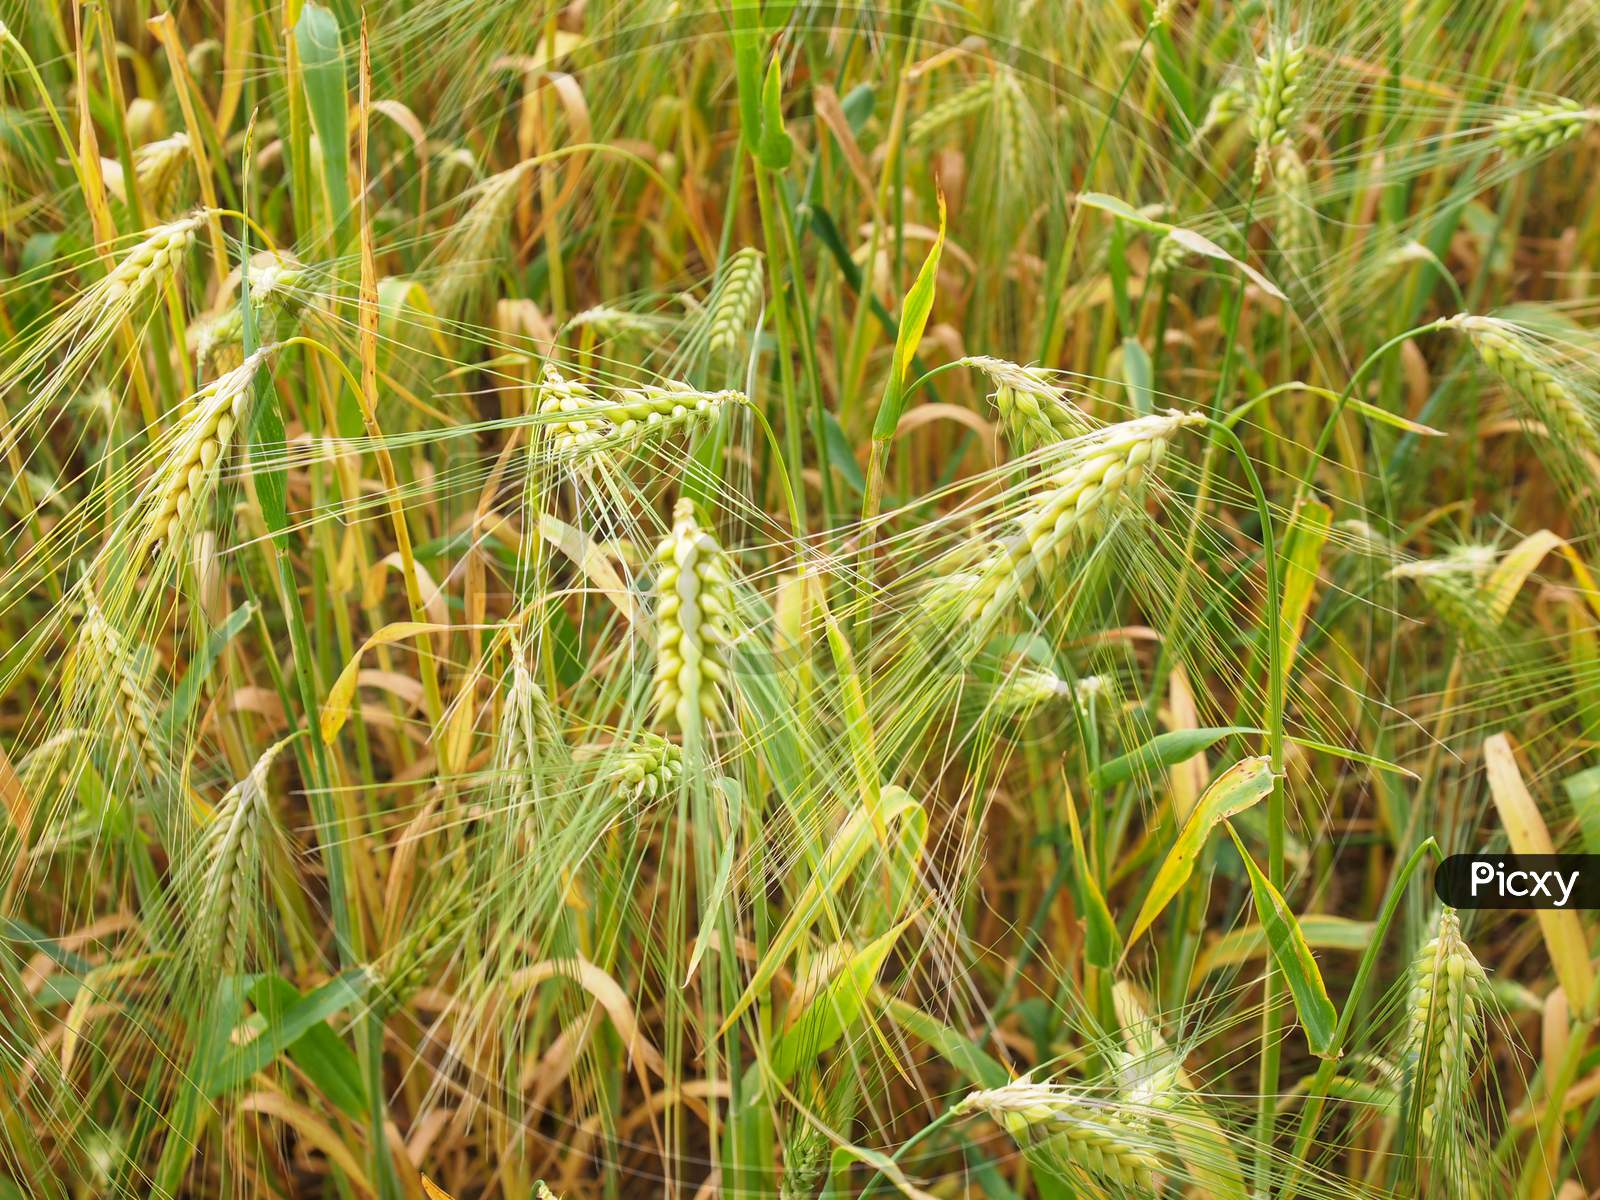 Barley Corn Field